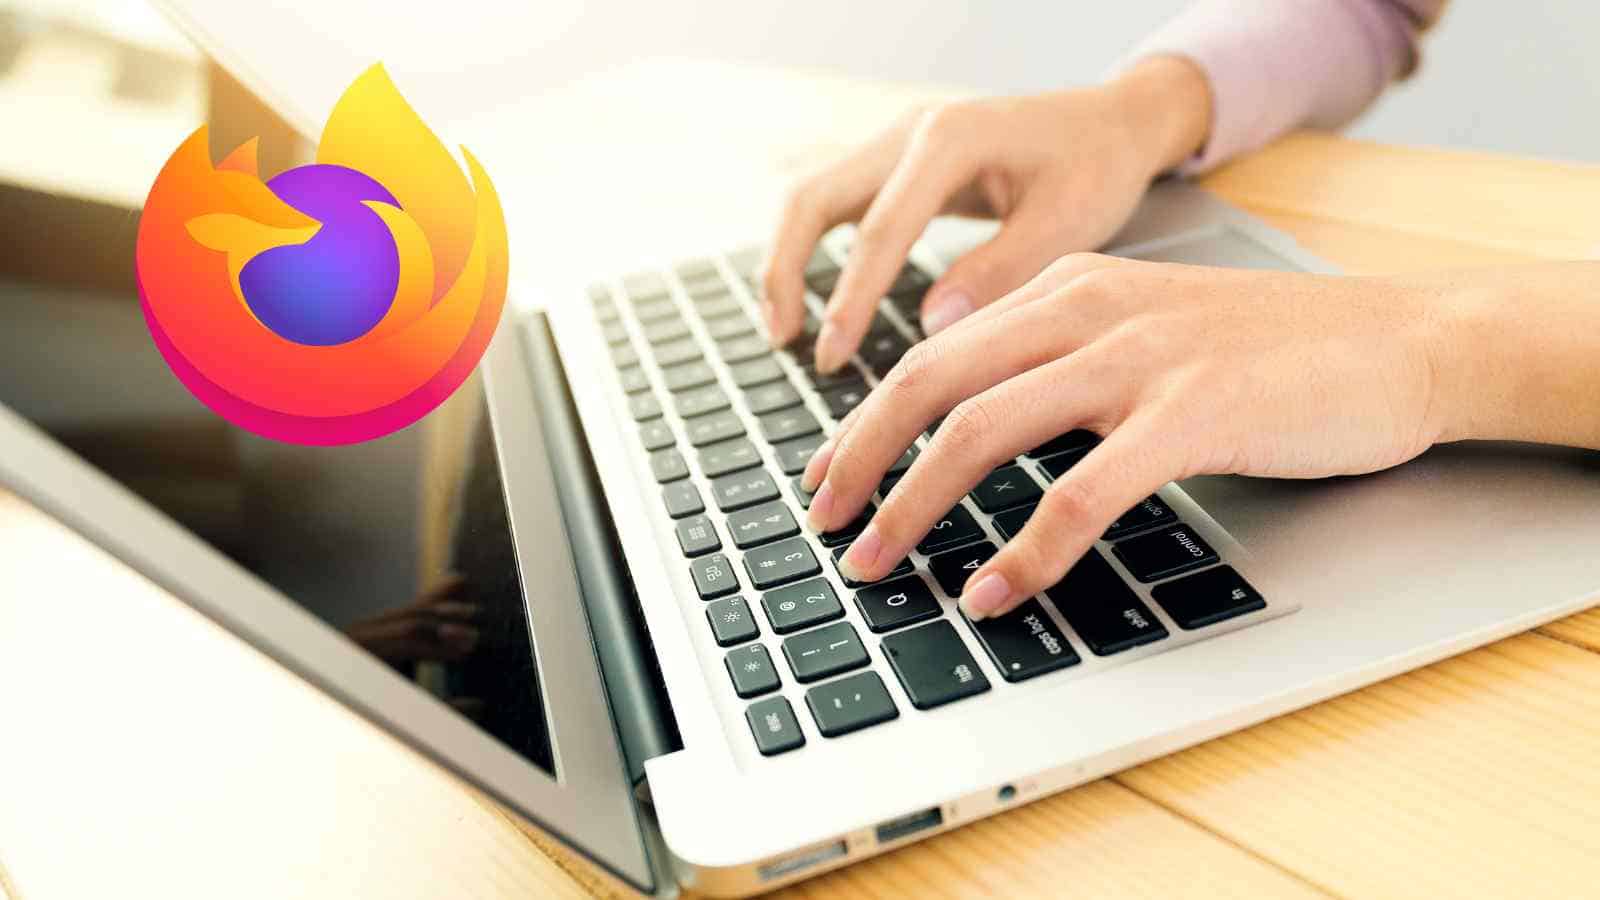 Mozilla introduce nel suo browser l'intelligenza virtuale, ma senza imporla e lasciando all'utente la decisione se usarla o meno.